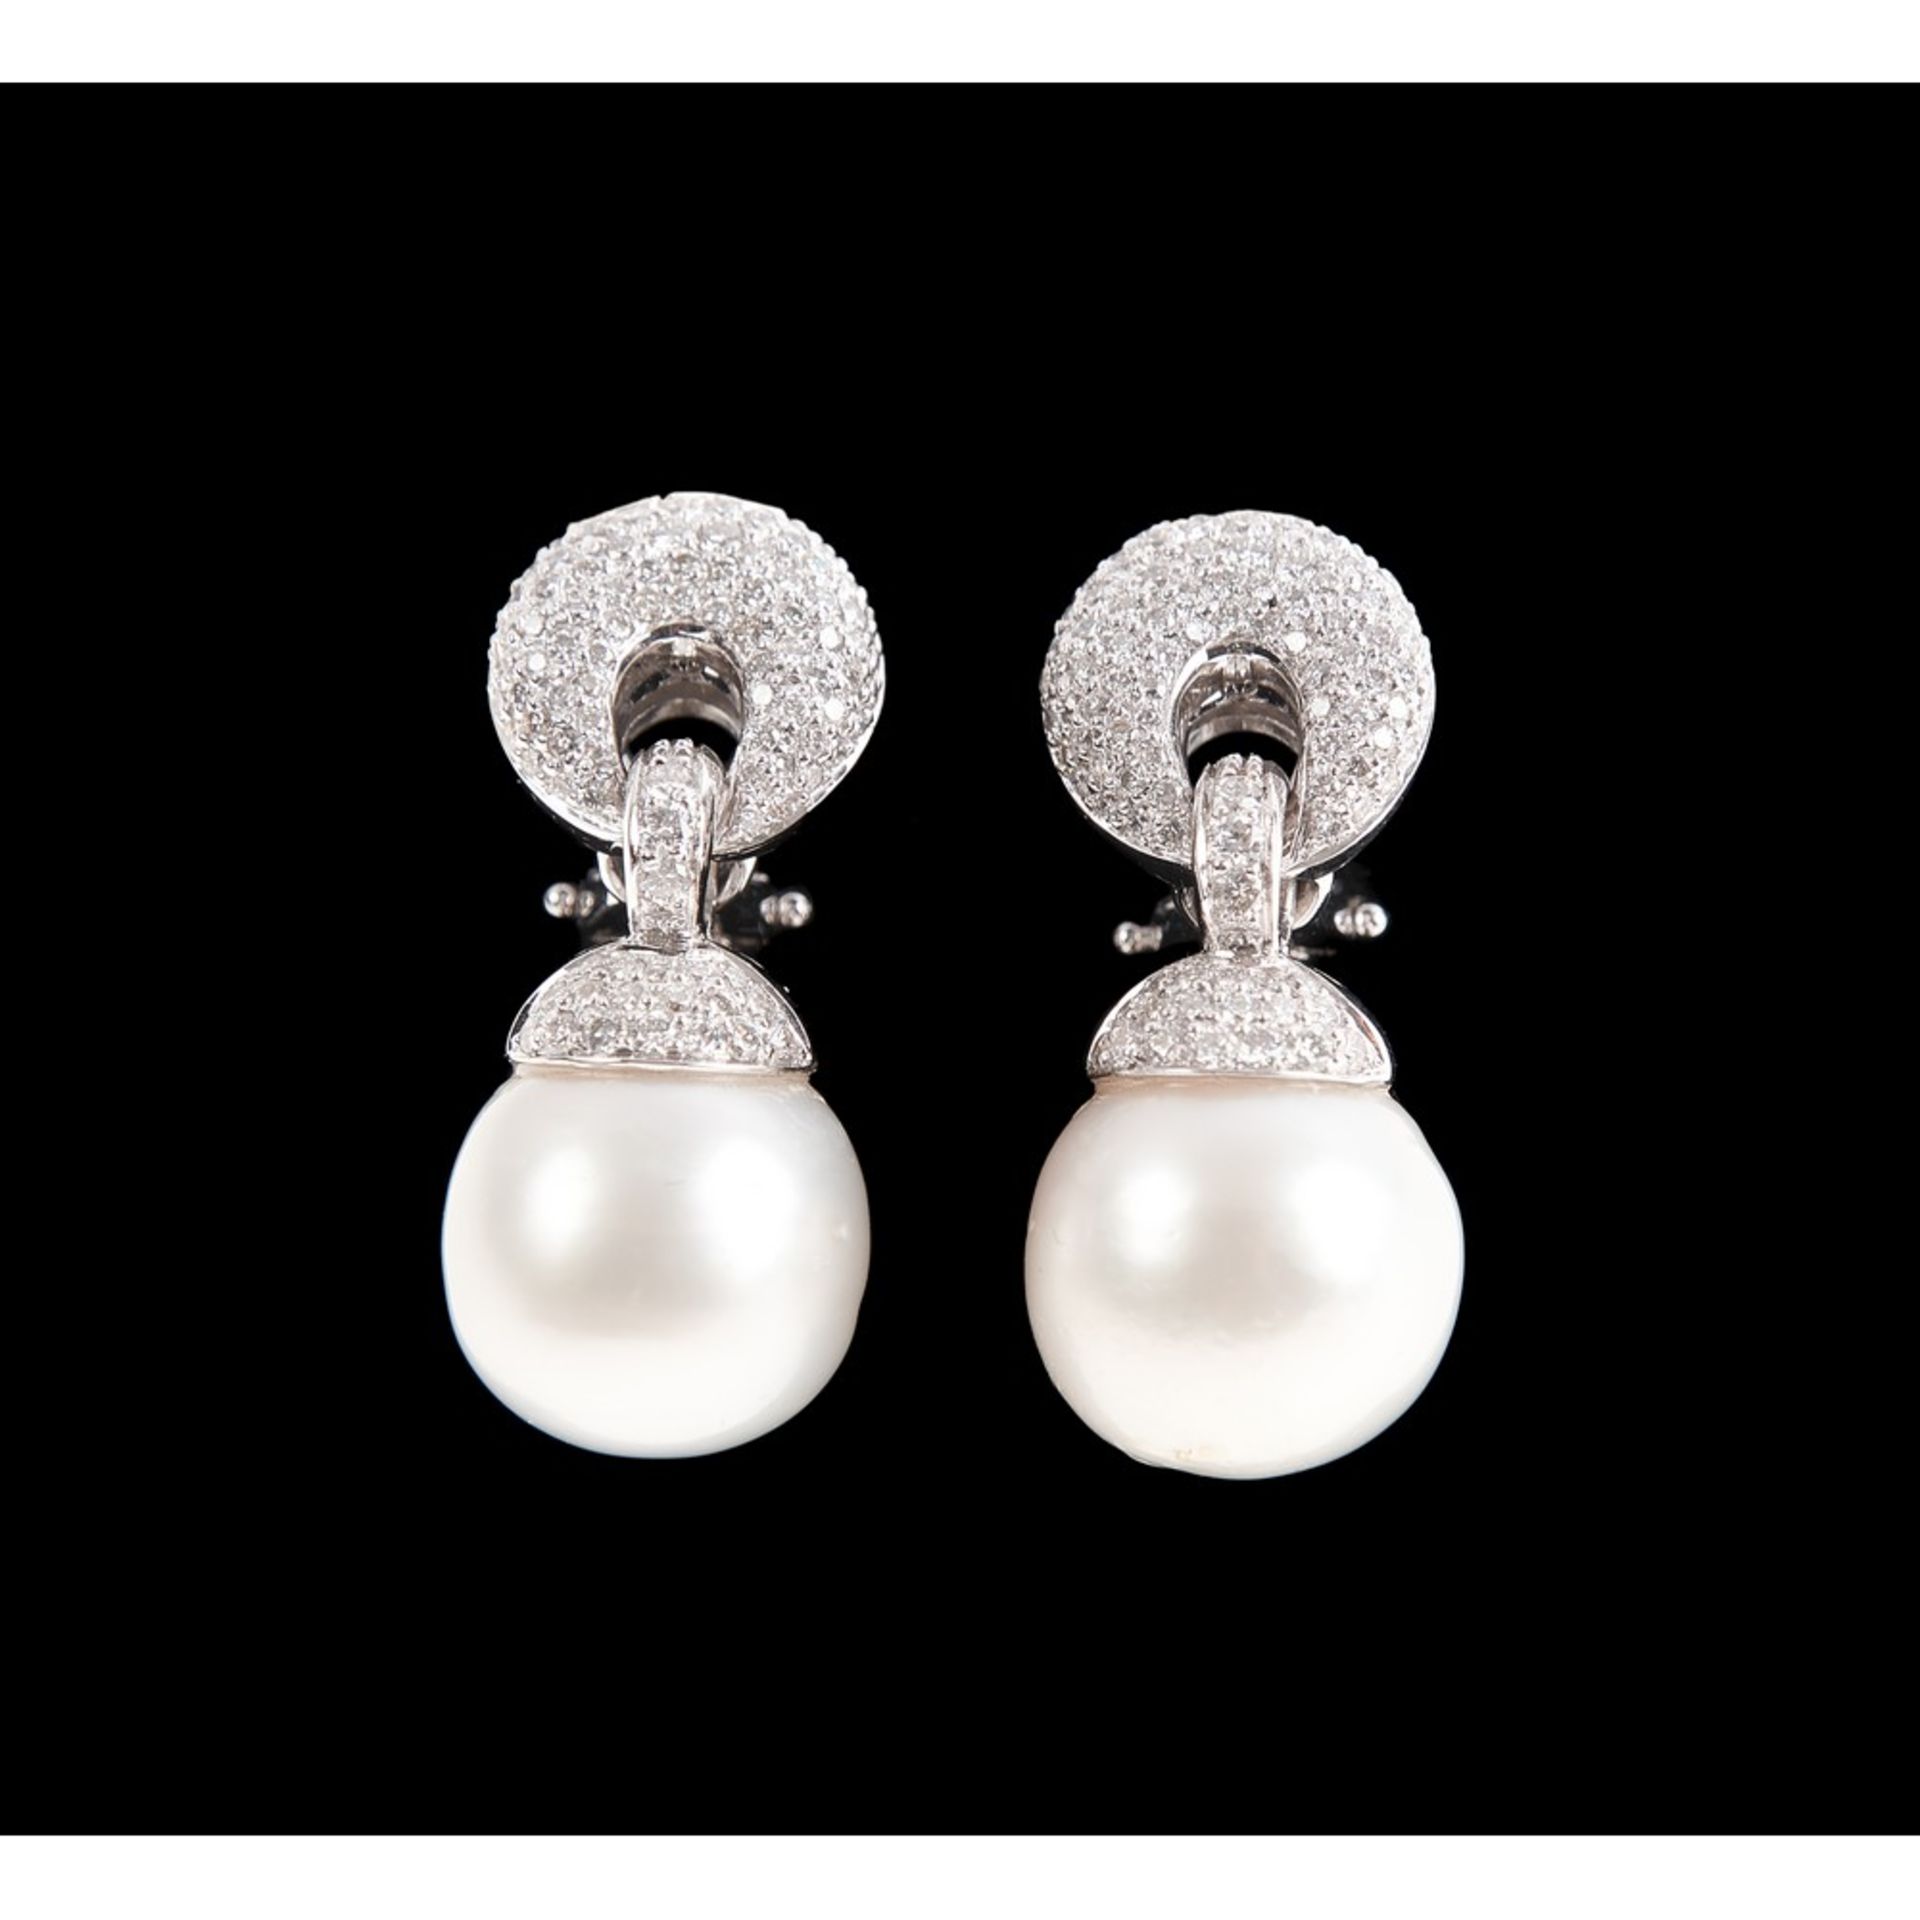 ORECCHINI in oro bianco con perle australiane ct. 22 e diamanti taglio brillante ct. 1,80, F color